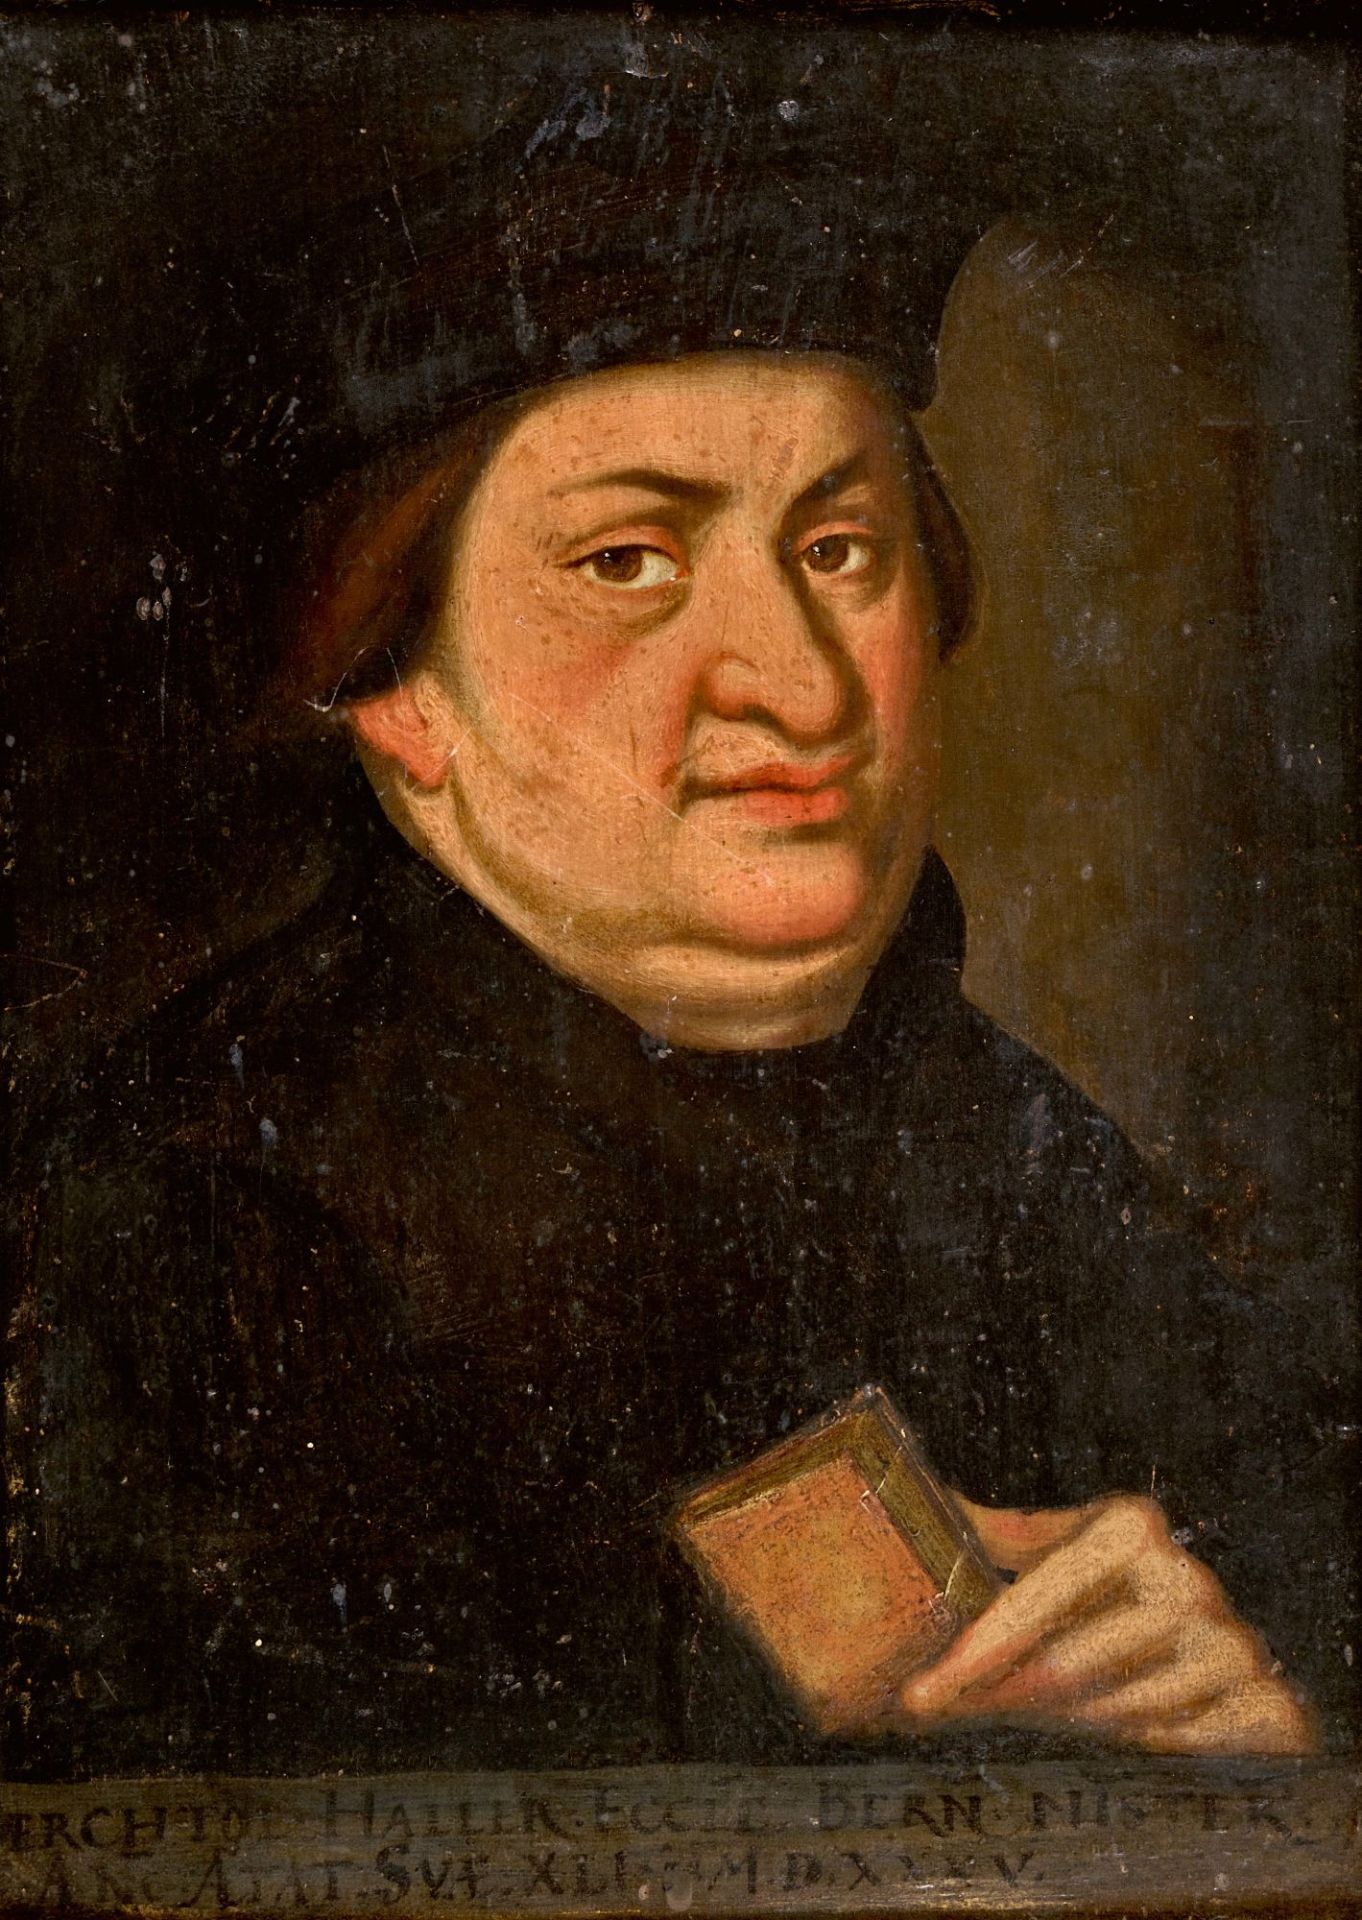 SCHWEIZ, 16. JH., Wohl - Presumably: Brustbildnis von Berchtold Haller (1494-1536) mit Buch.